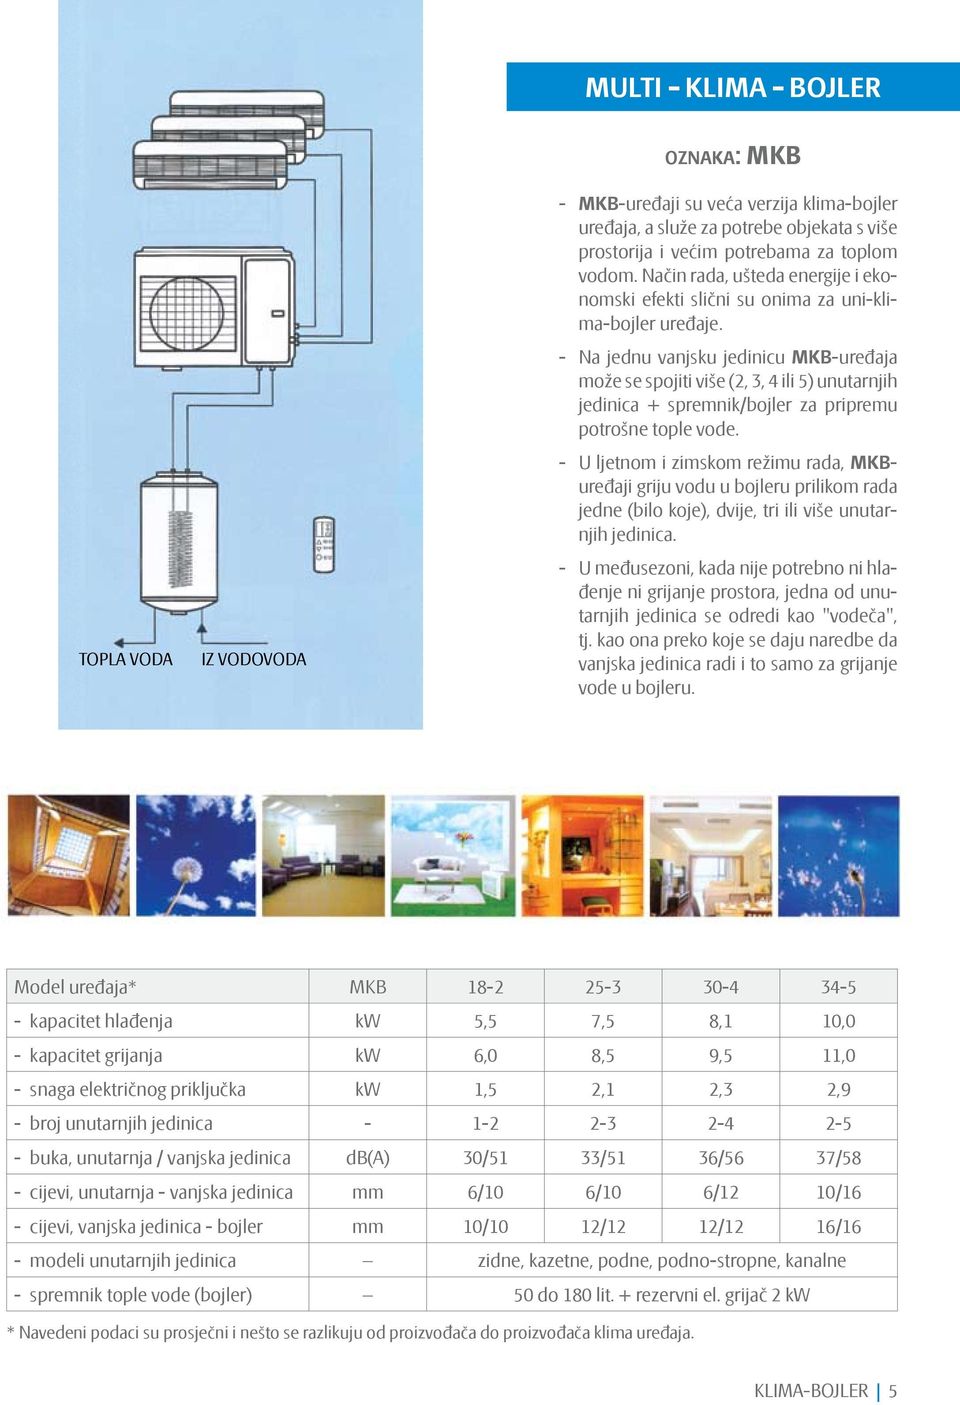 Na jednu vanjsku jedinicu MKB-uređaja može se spojiti više (2, 3, 4 ili 5) unutarnjih jedinica + spremnik/bojler za pripremu potrošne tople vode.